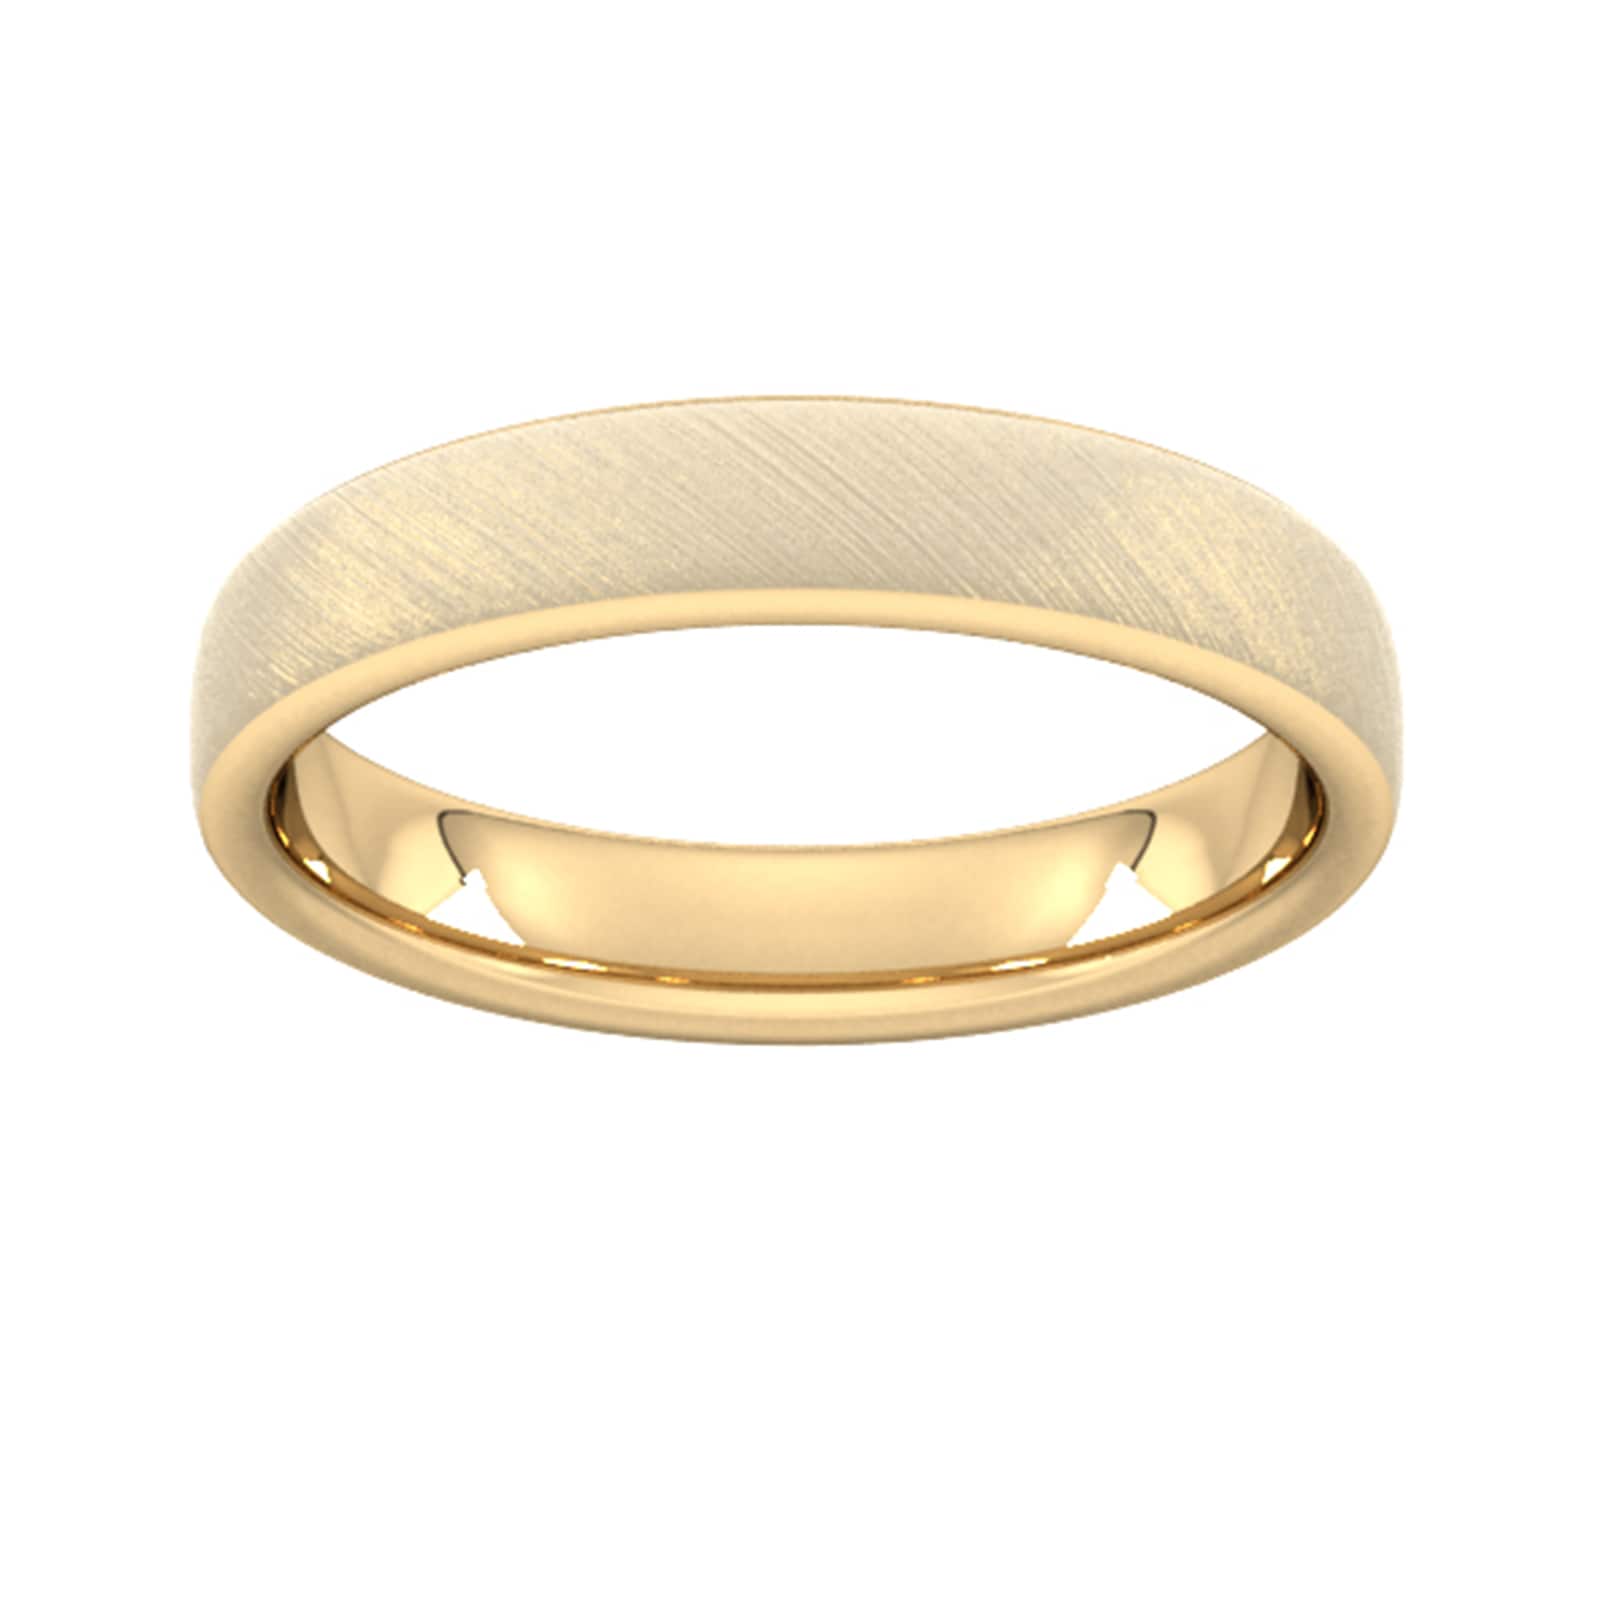 4mm Slight Court Extra Heavy Diagonal Matt Finish Wedding Ring In 9 Carat Yellow Gold - Ring Size Q